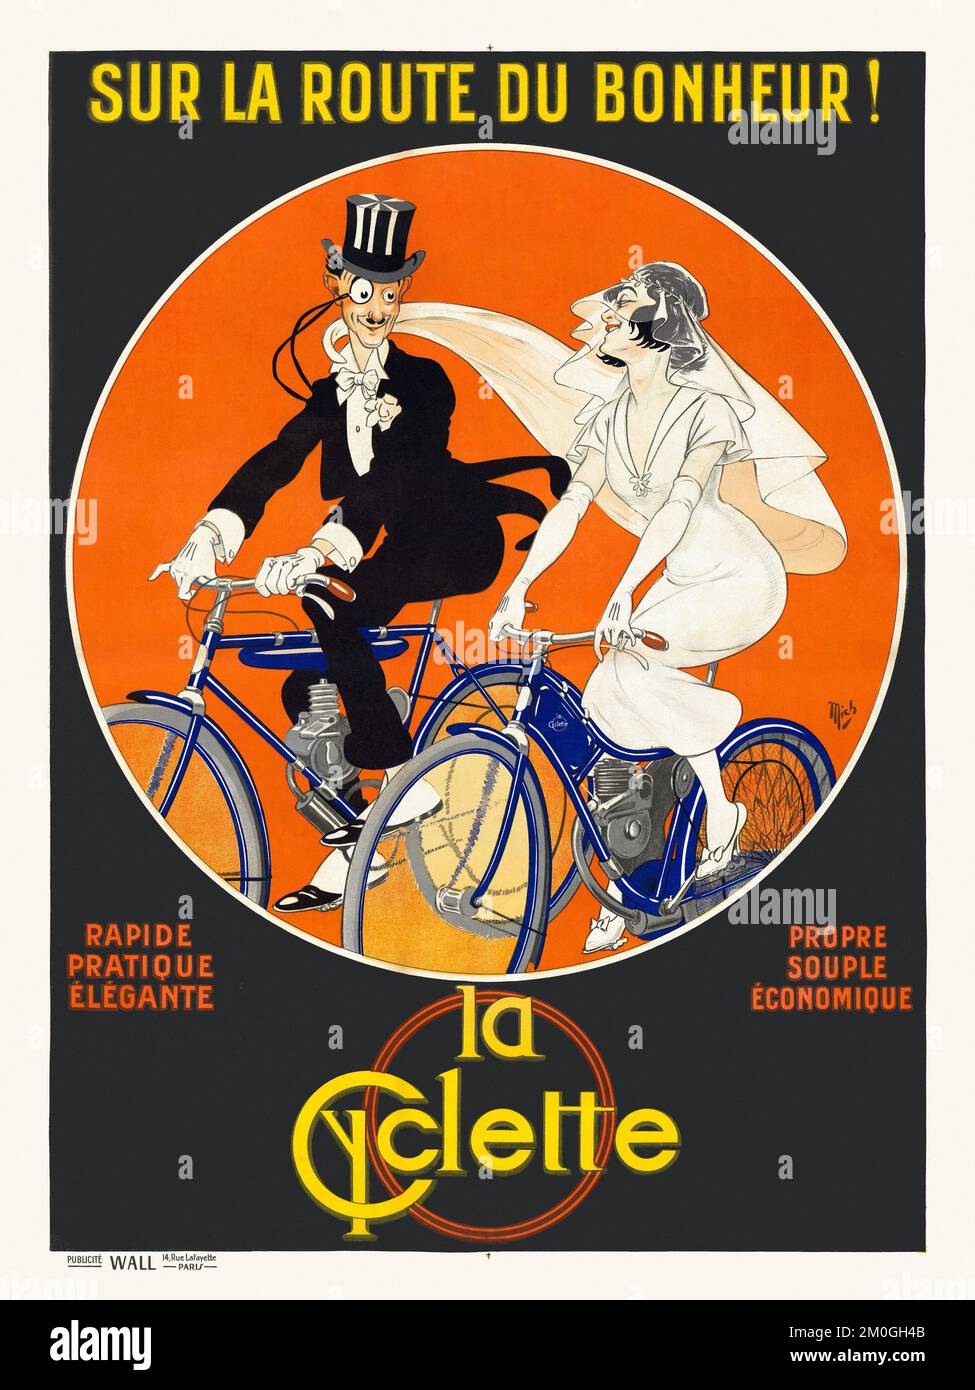 Sur la route du bonheur... La Cycette par Jean Marie Michel Liebeaux Mich (1881-1923). Affiche publiée en 1909 en France. Banque D'Images